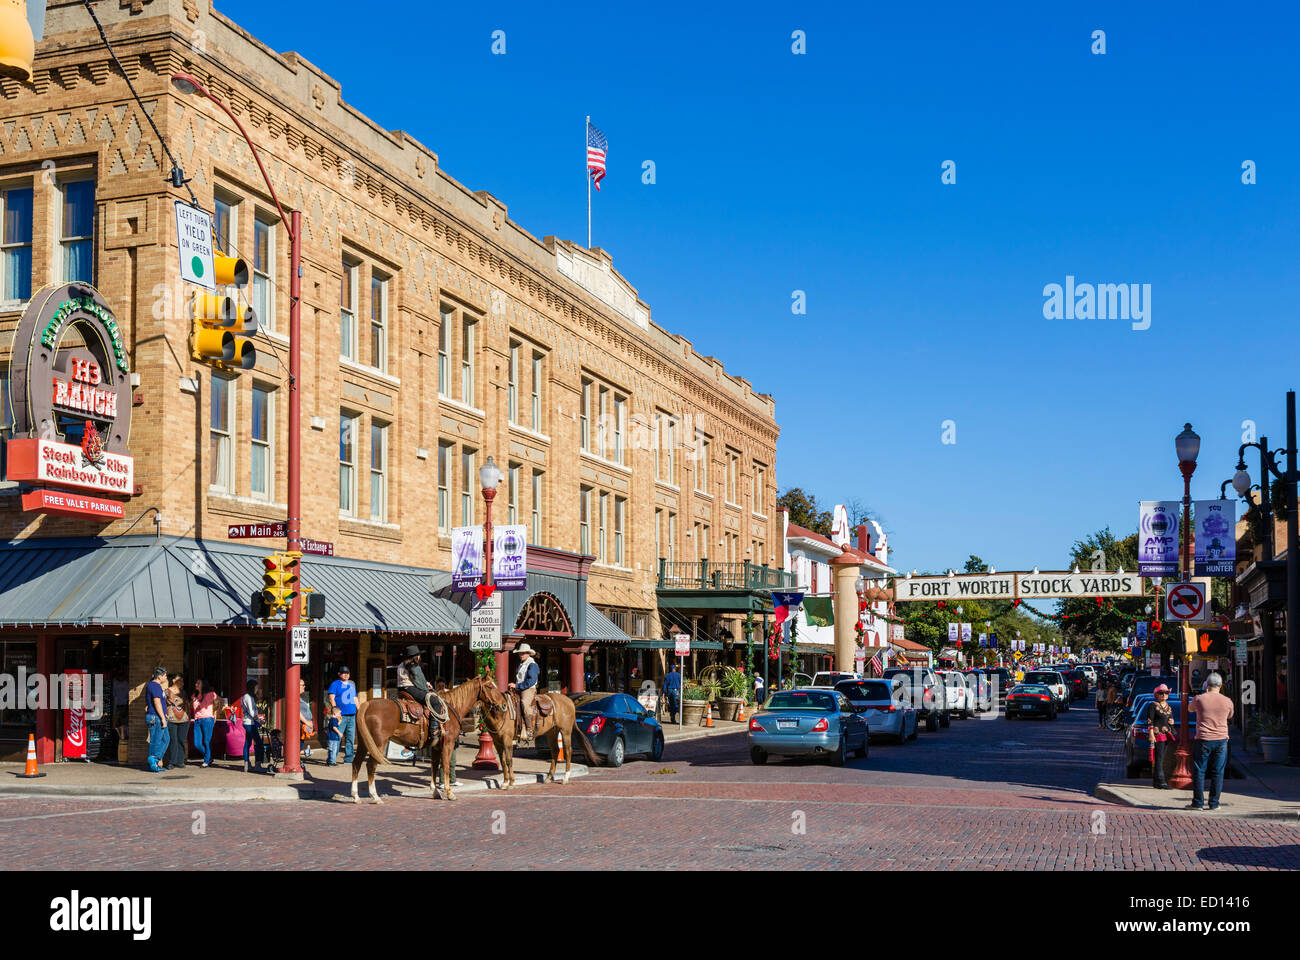 Exchange Avenue al bivio con la strada principale con Stockyards Hotel a sinistra, Stockyards distretto, Fort Worth, Texas, Stati Uniti d'America Foto Stock